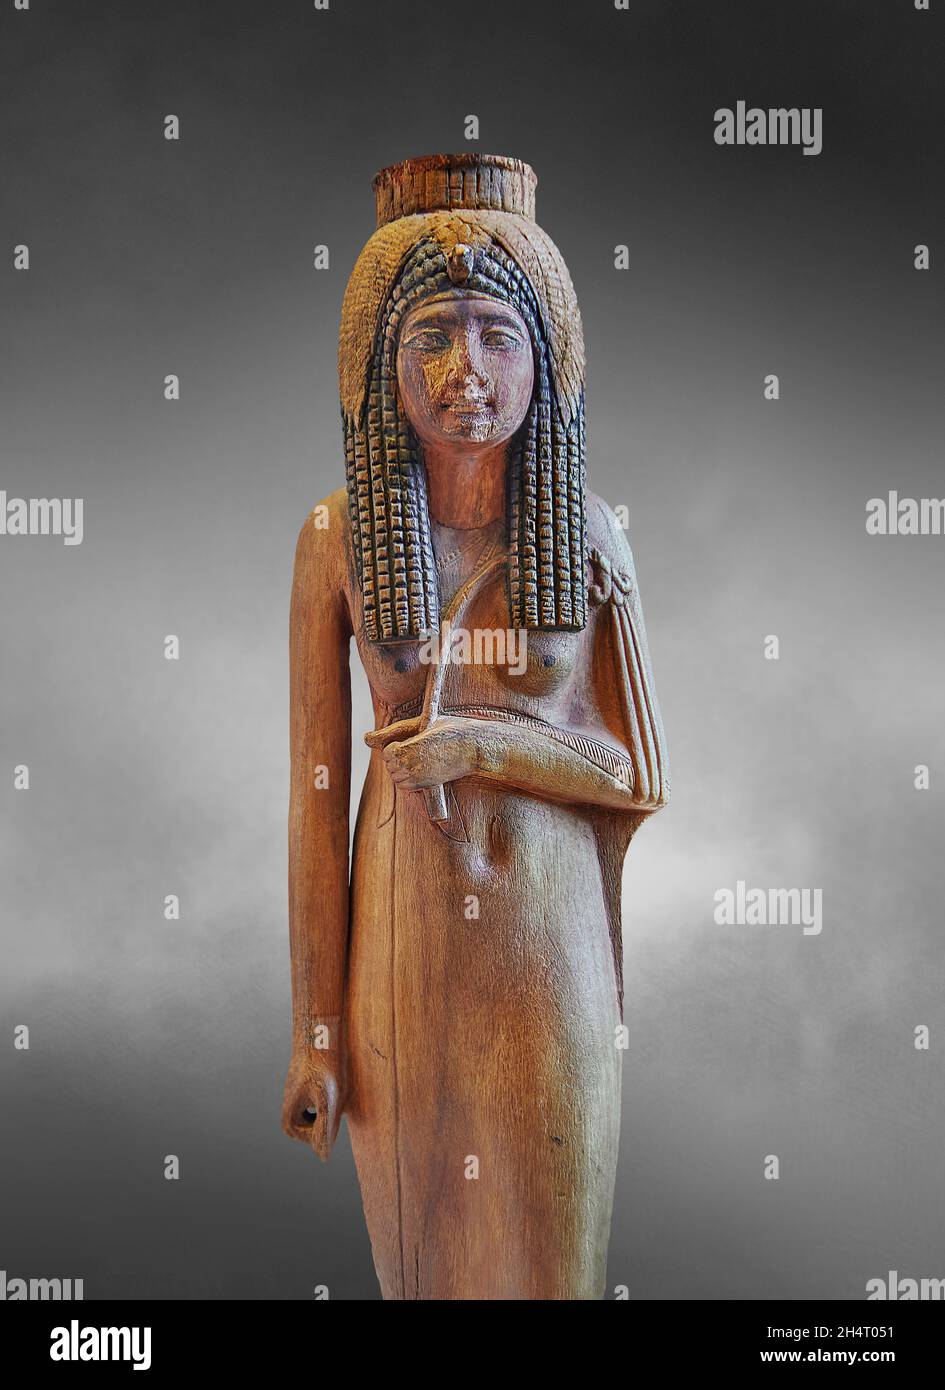 Bois égyptien la sculpture de la reine déifiée Ahmes Nefertari, 1279-1213 avant J.-C. 19e dynastie, a trouvé Deir el Medina, acacia.Musée du Louvre inv N 470.TH Banque D'Images